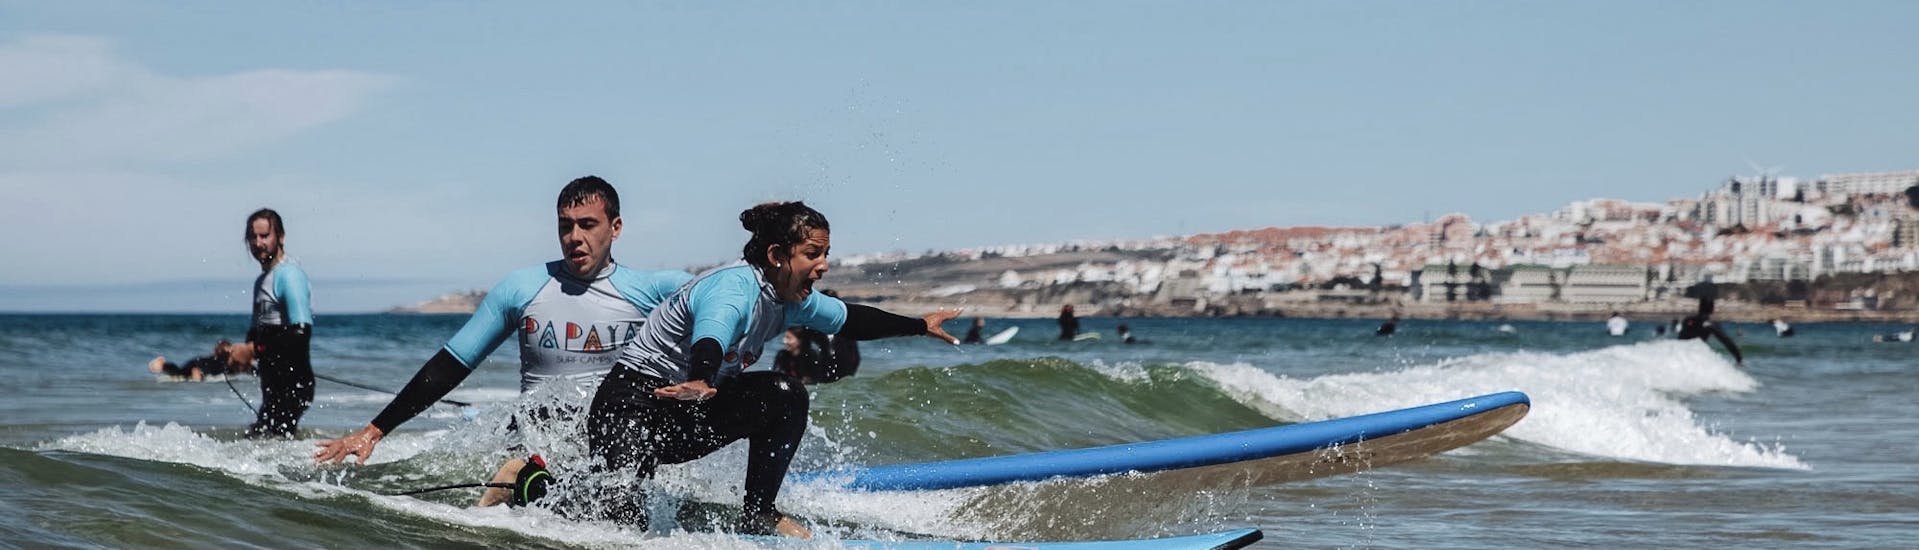 Los participantes durante las clases de surf (a partir de 18 años) en Cascais, cerca de Lisboa, con Papaya Surf Camp.